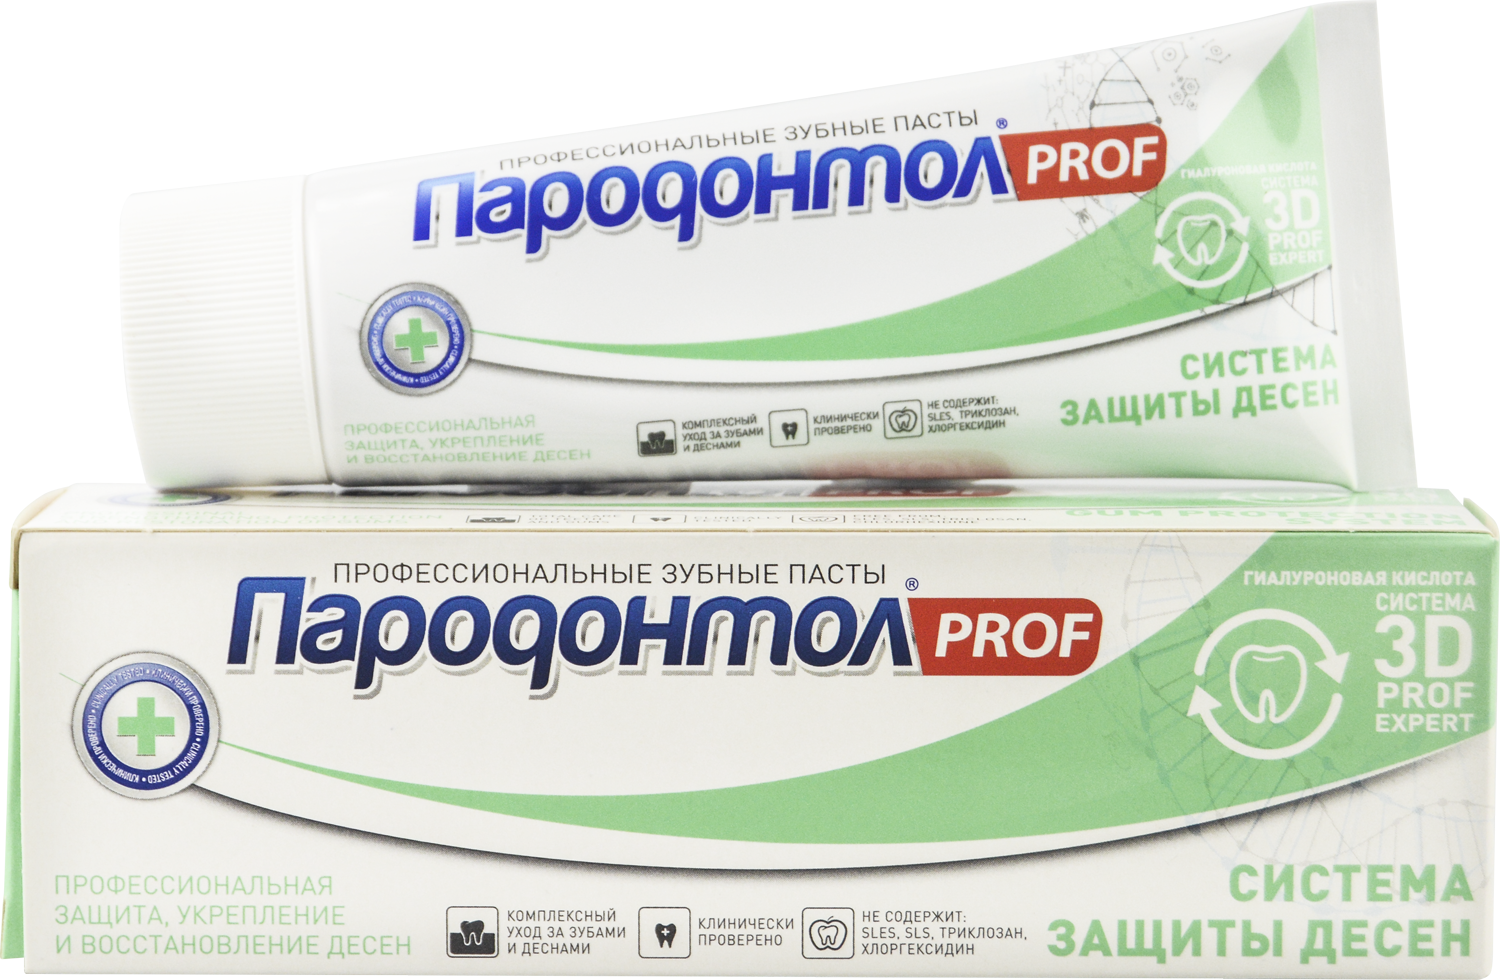 Зубная паста "Пародонтол" ("Parodontol") PROF Система защиты десен